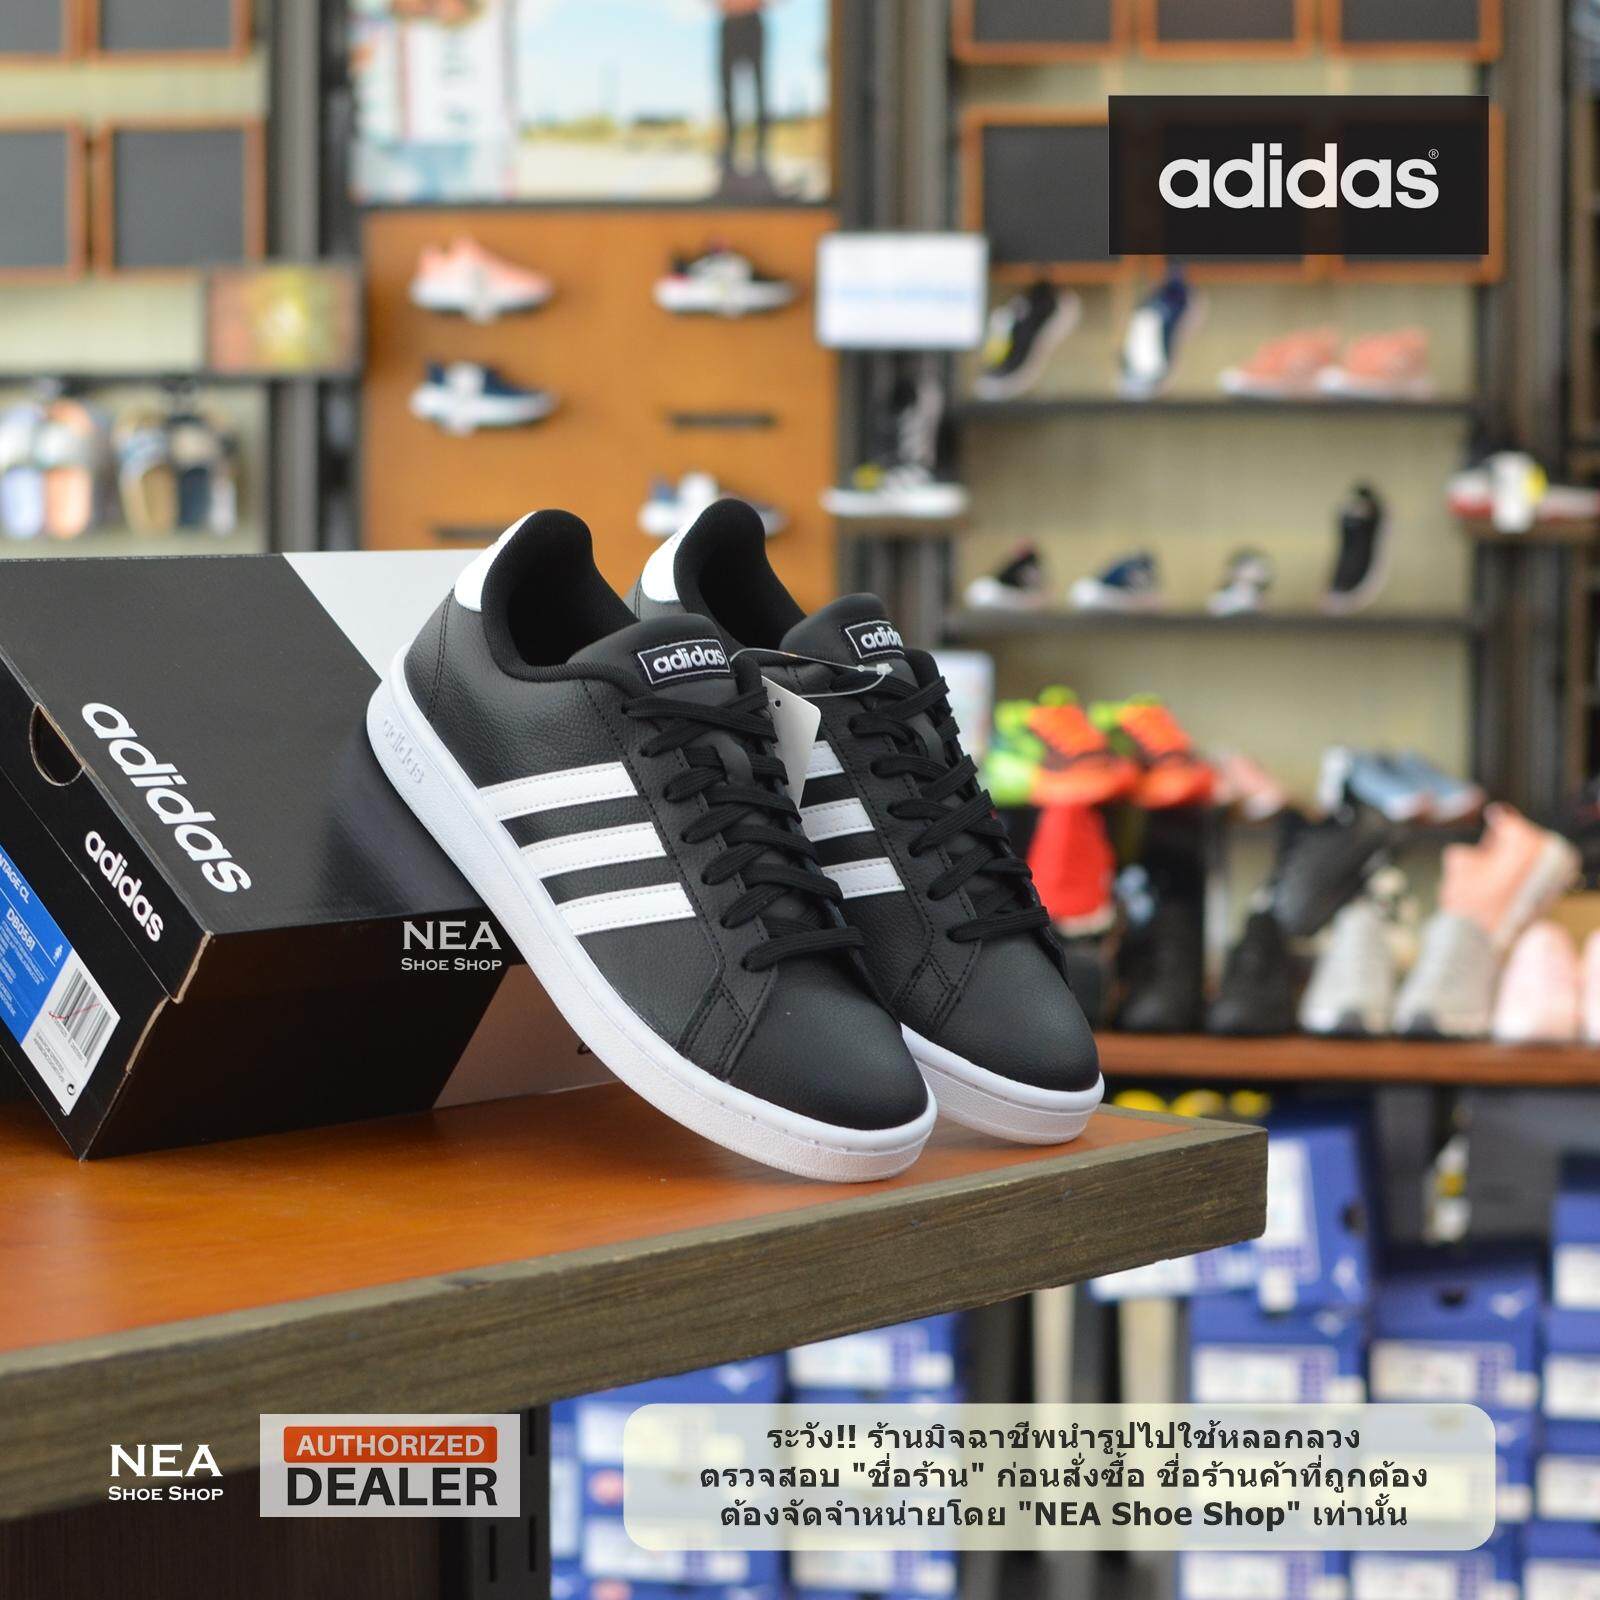 [ลิขสิทธิ์แท้] Adidas Grand Court - Black/White [M] NEA รองเท้า อาดิดาส ผู้ชาย